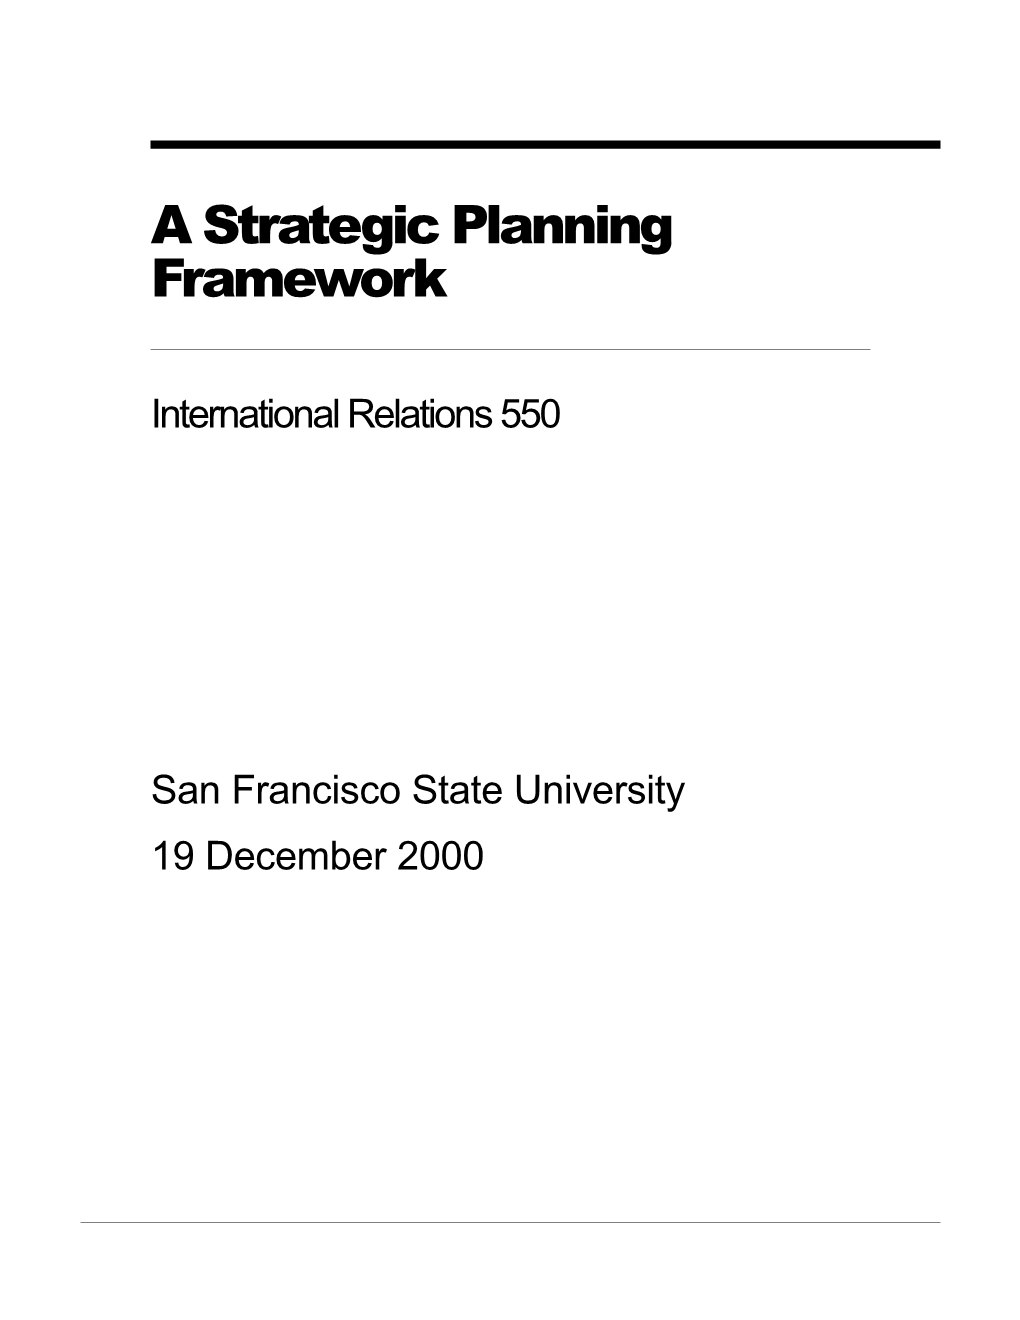 A Strategic Planning Framework